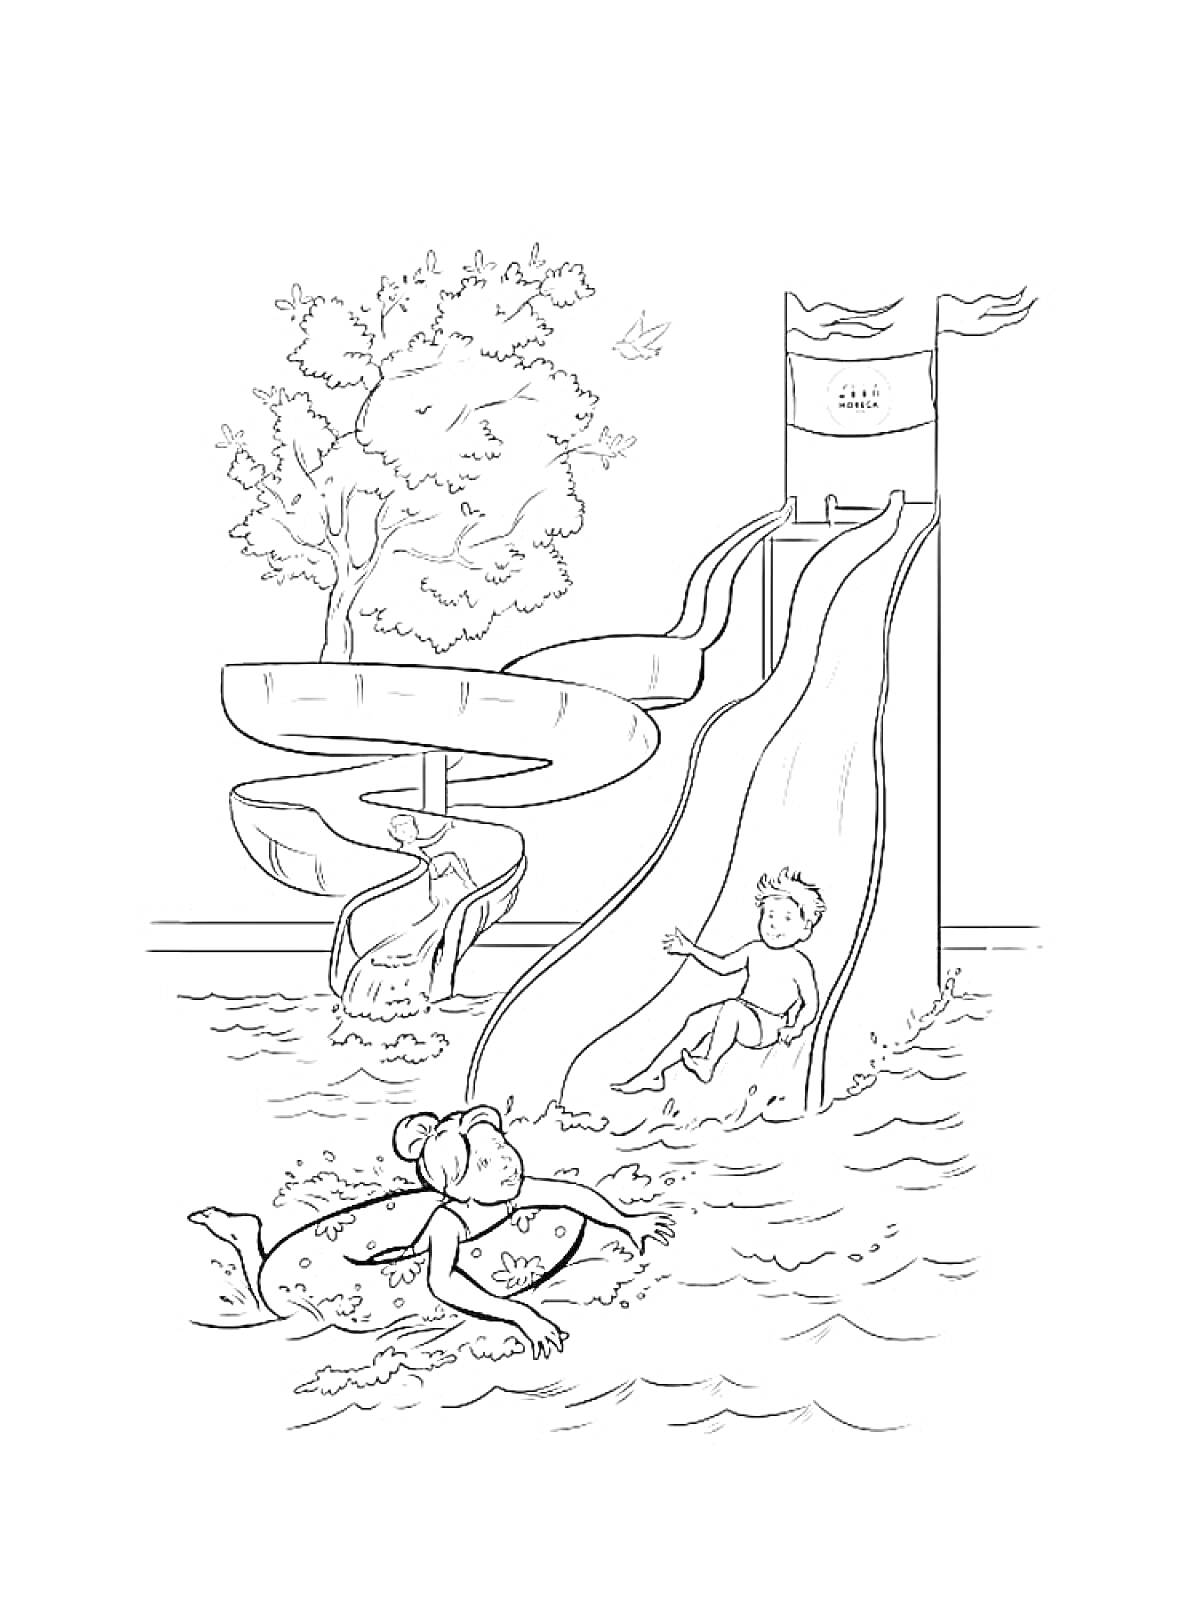 Дети в аквапарке, девушка плавучая на воде, мальчик на водяной горке, извивающаяся горка, деревья и птица на заднем плане